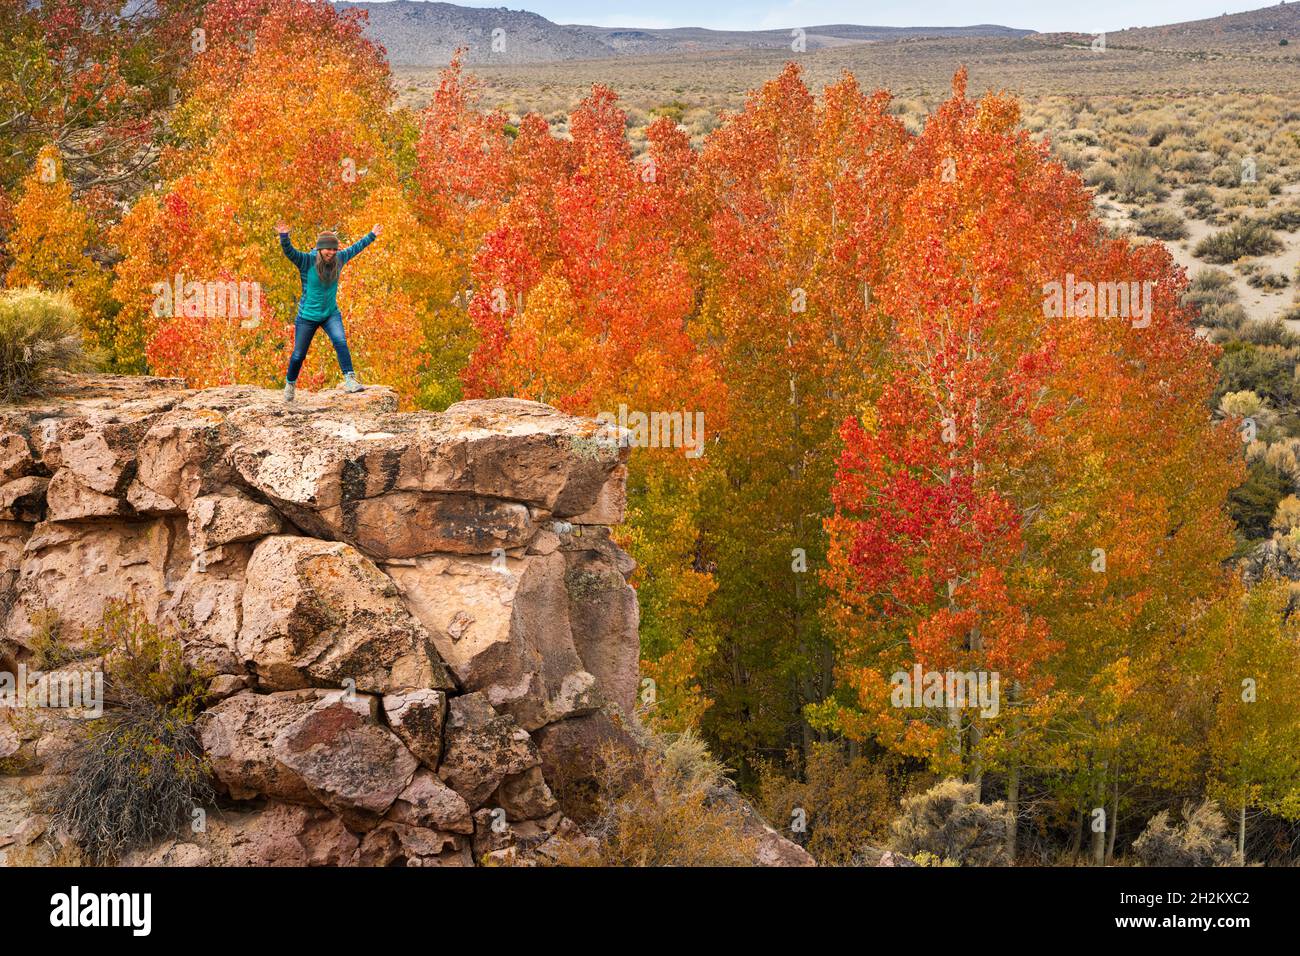 Colores de otoño protegidos en barrancos del desierto cerca del lago Mono al amanecer con caminadora femenina. Foto de stock